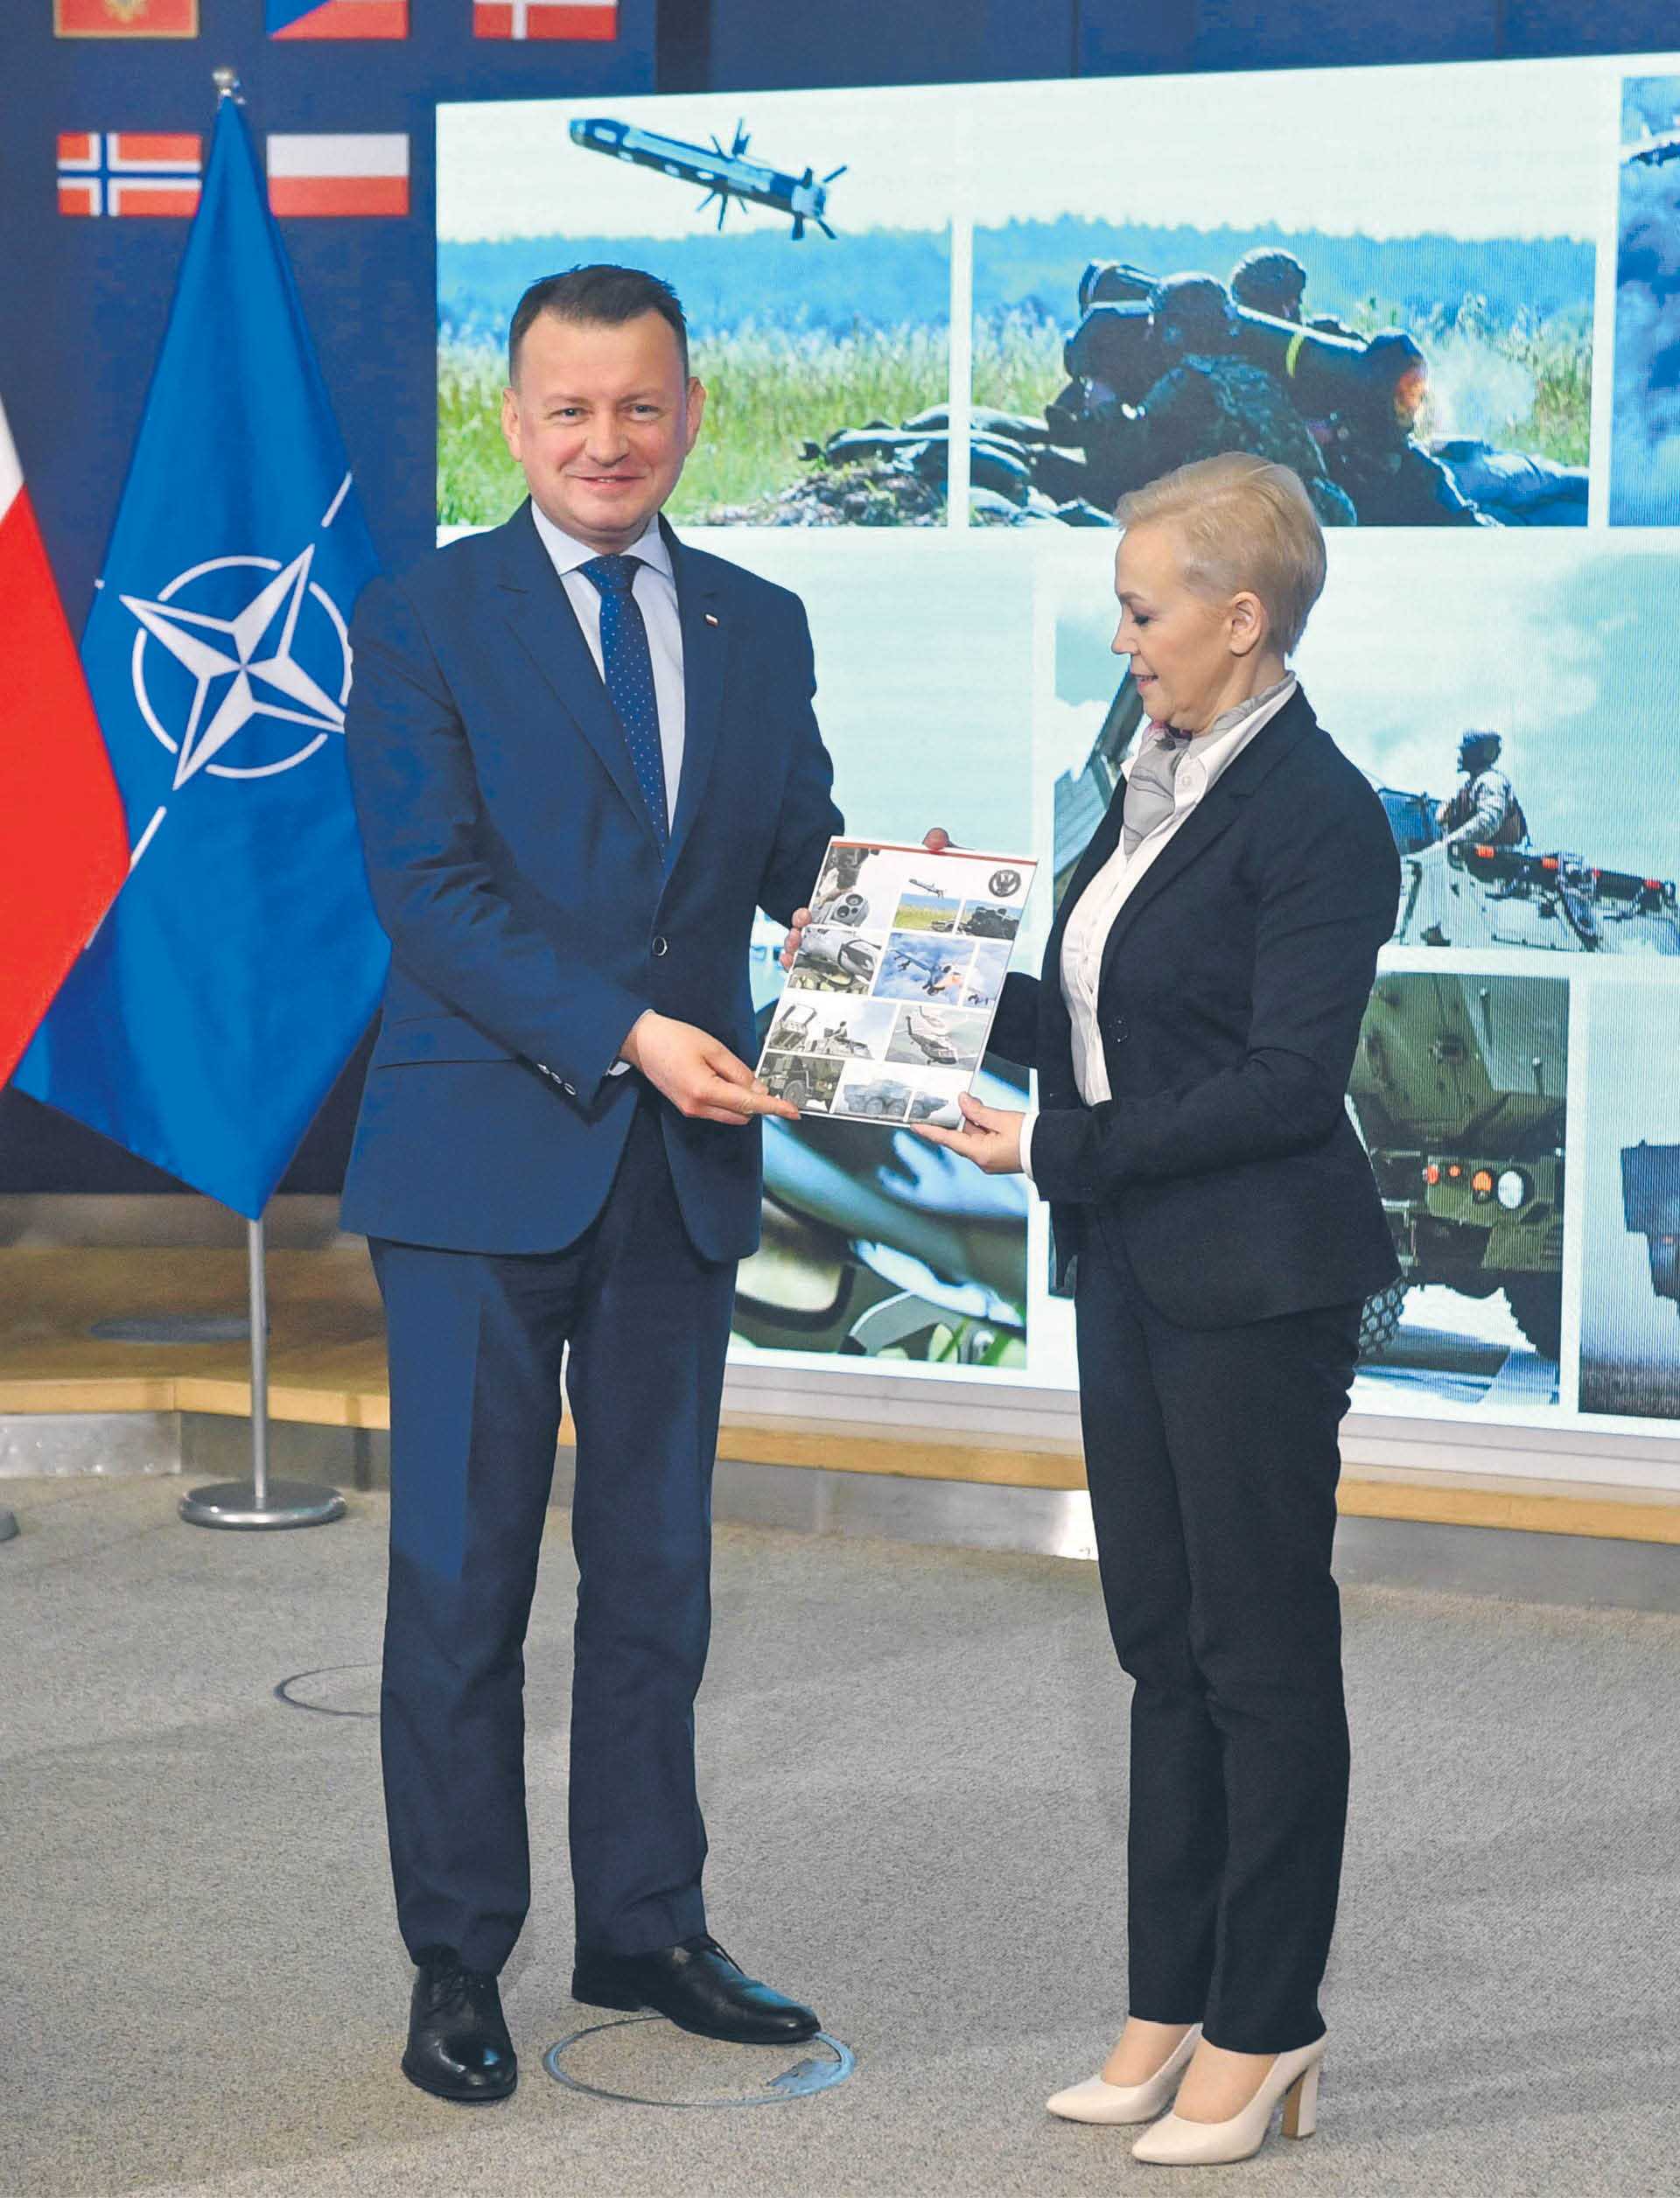 Mariusz Błaszczak, minister obrony narodowej, oraz Beata Daszyńska-Muzyczka, prezes Banku Gospodarstwa Krajowego, podpisali umowę dotyczącą utworzenia Funduszu Wsparcia Sił Zbrojnych